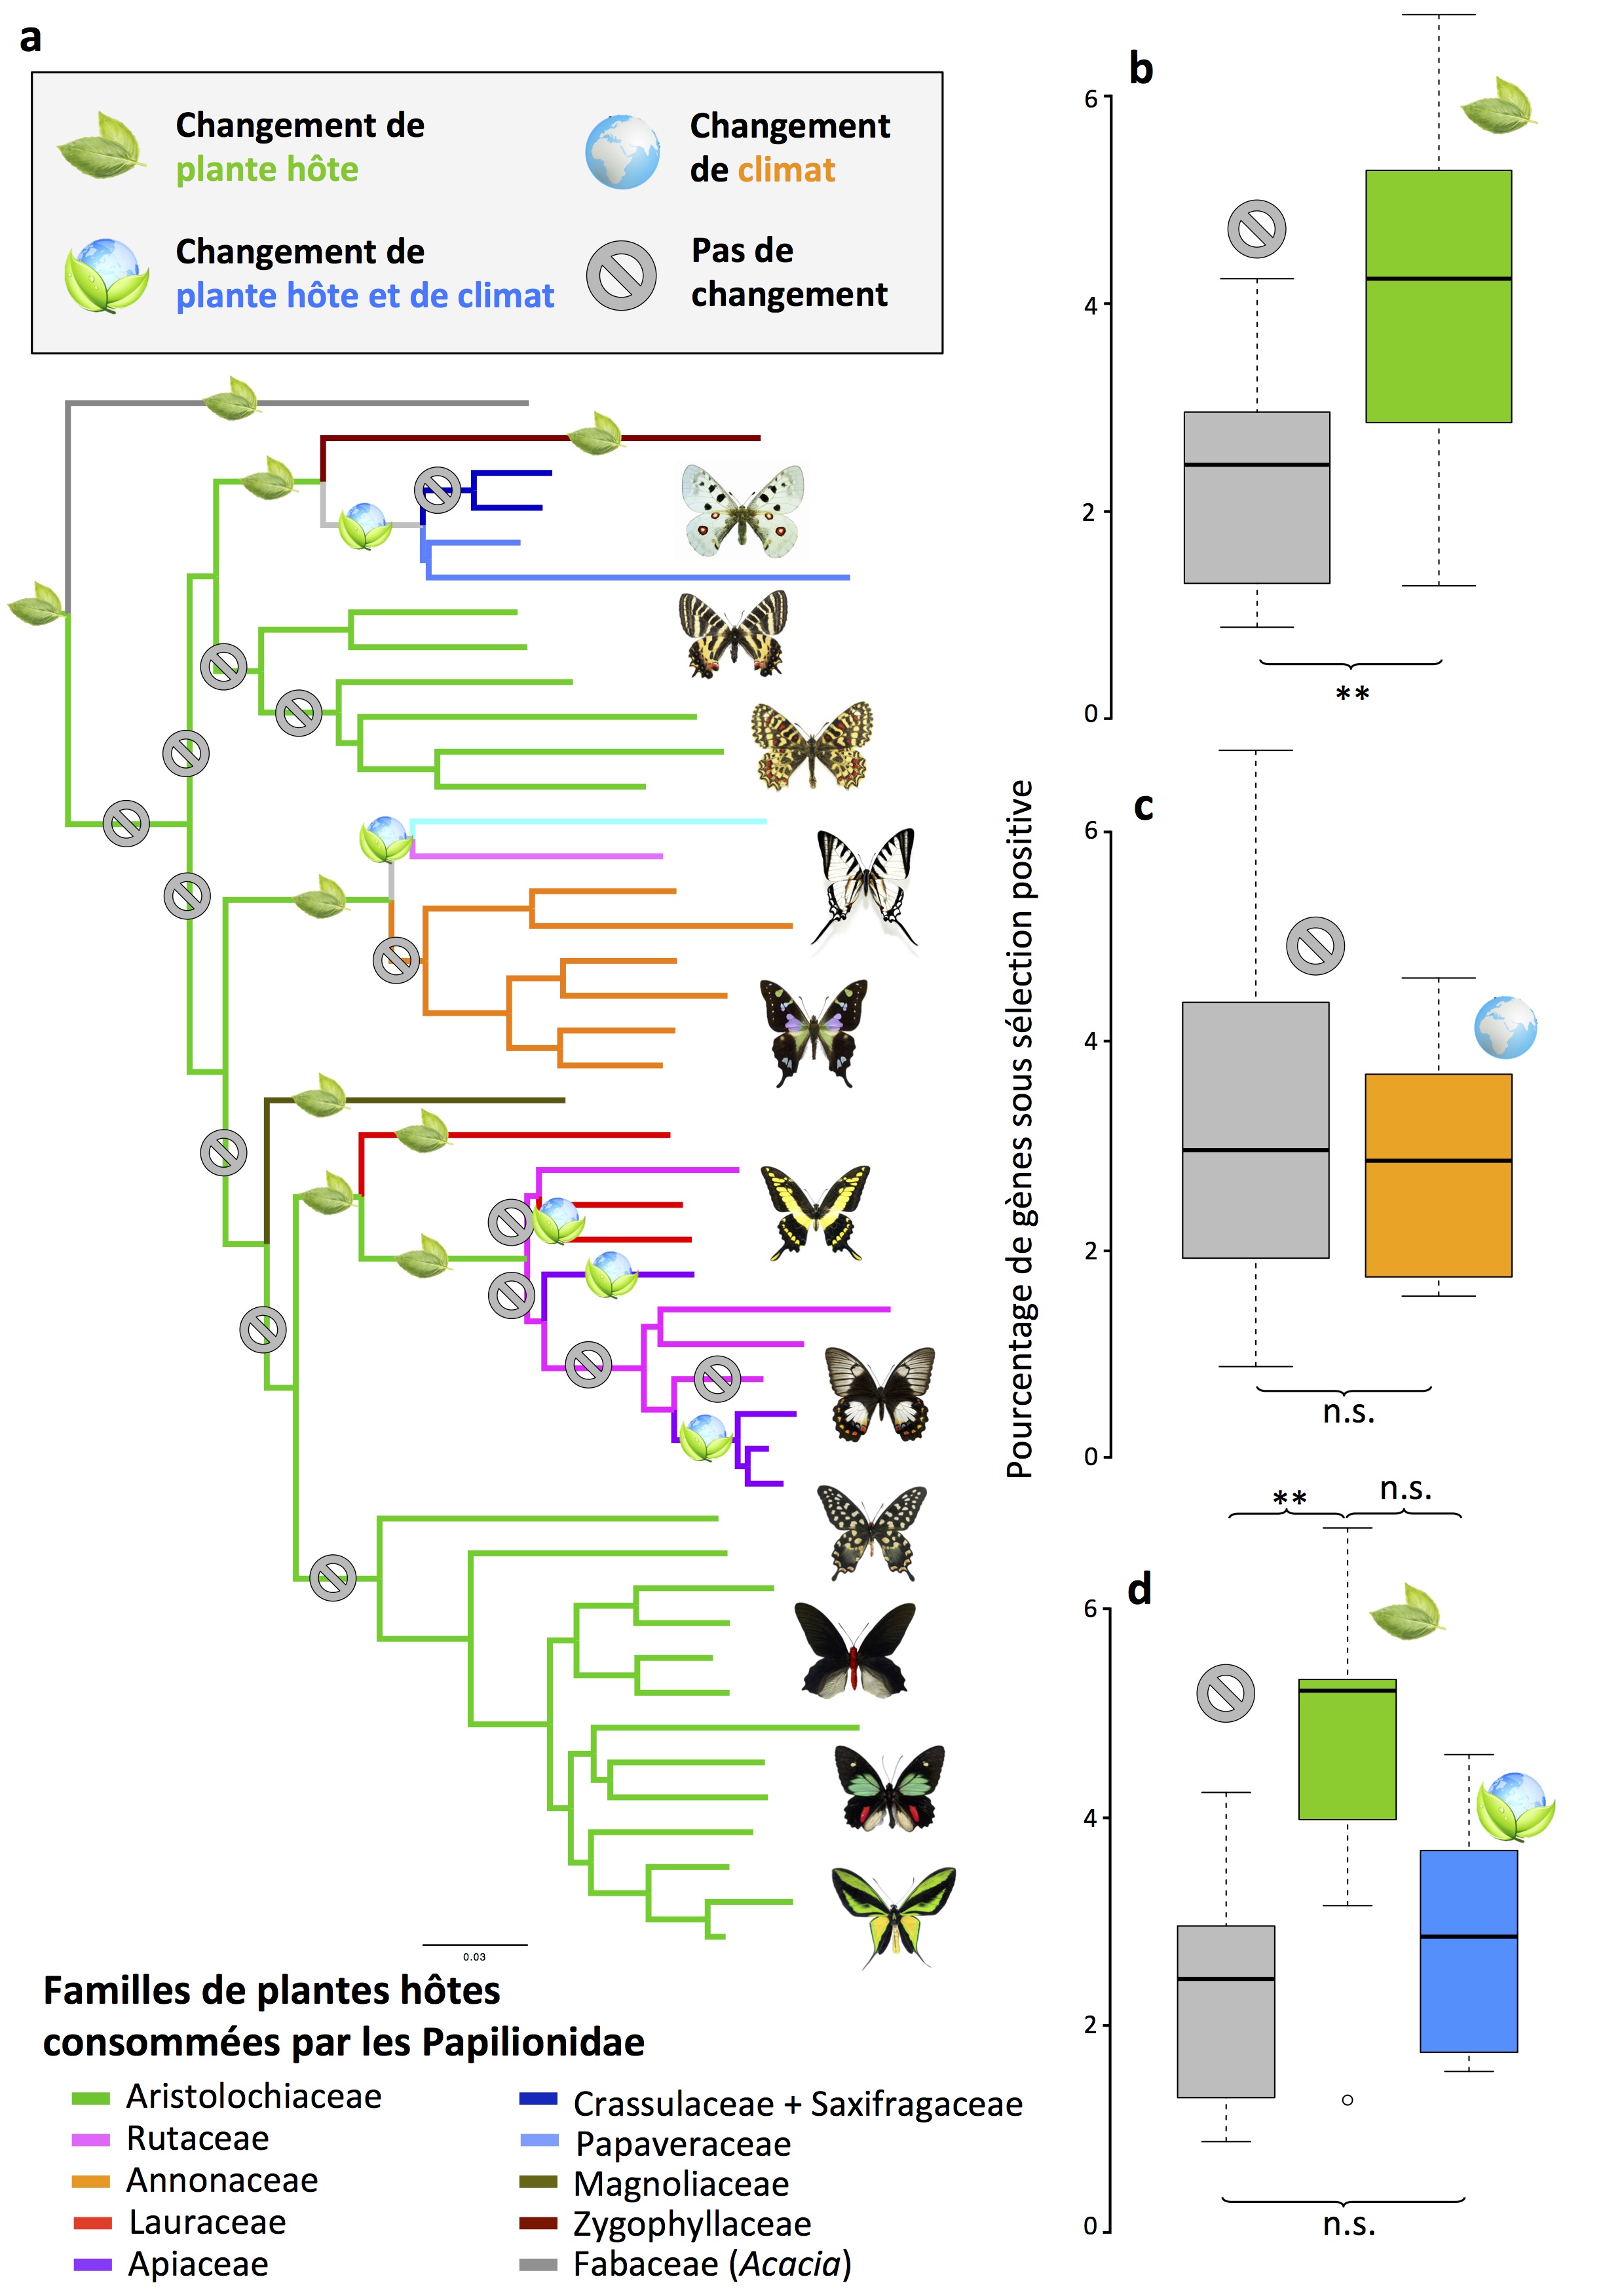 Les changements de plante hôte sont associés avec des adaptations moléculaires plus importantes. (A) Arbre phylogénomique au niveau du genre présentant des branches avec et sans changement de plante hôte, sur lesquelles sont effectuées des analyses d'évolution moléculaire à l'échelle du génome. (B) Nombre de gènes sous sélection positive pour les lignées de papillons changeant de famille de plantes hôtes (en vert) ou non (en gris). (C) Nombre de gènes sous sélection positive pour les lignées de papillons subissant des changements climatiques (en orange) ou non (en gris). (D) Nombre de gènes sous sélection positive pour les lignées de papillons changeant de plantes hôtes (en vert), changeant à la fois de plante hôte et de climat (en bleu), ou non (en gris). Cela démontre les signatures à l'échelle du génome des adaptations dans les lignées de papillons qui changent de familles de plantes hôtes. Figure par Rémi Allio et Fabien Condamine (CNRS, Université de Montpellier).